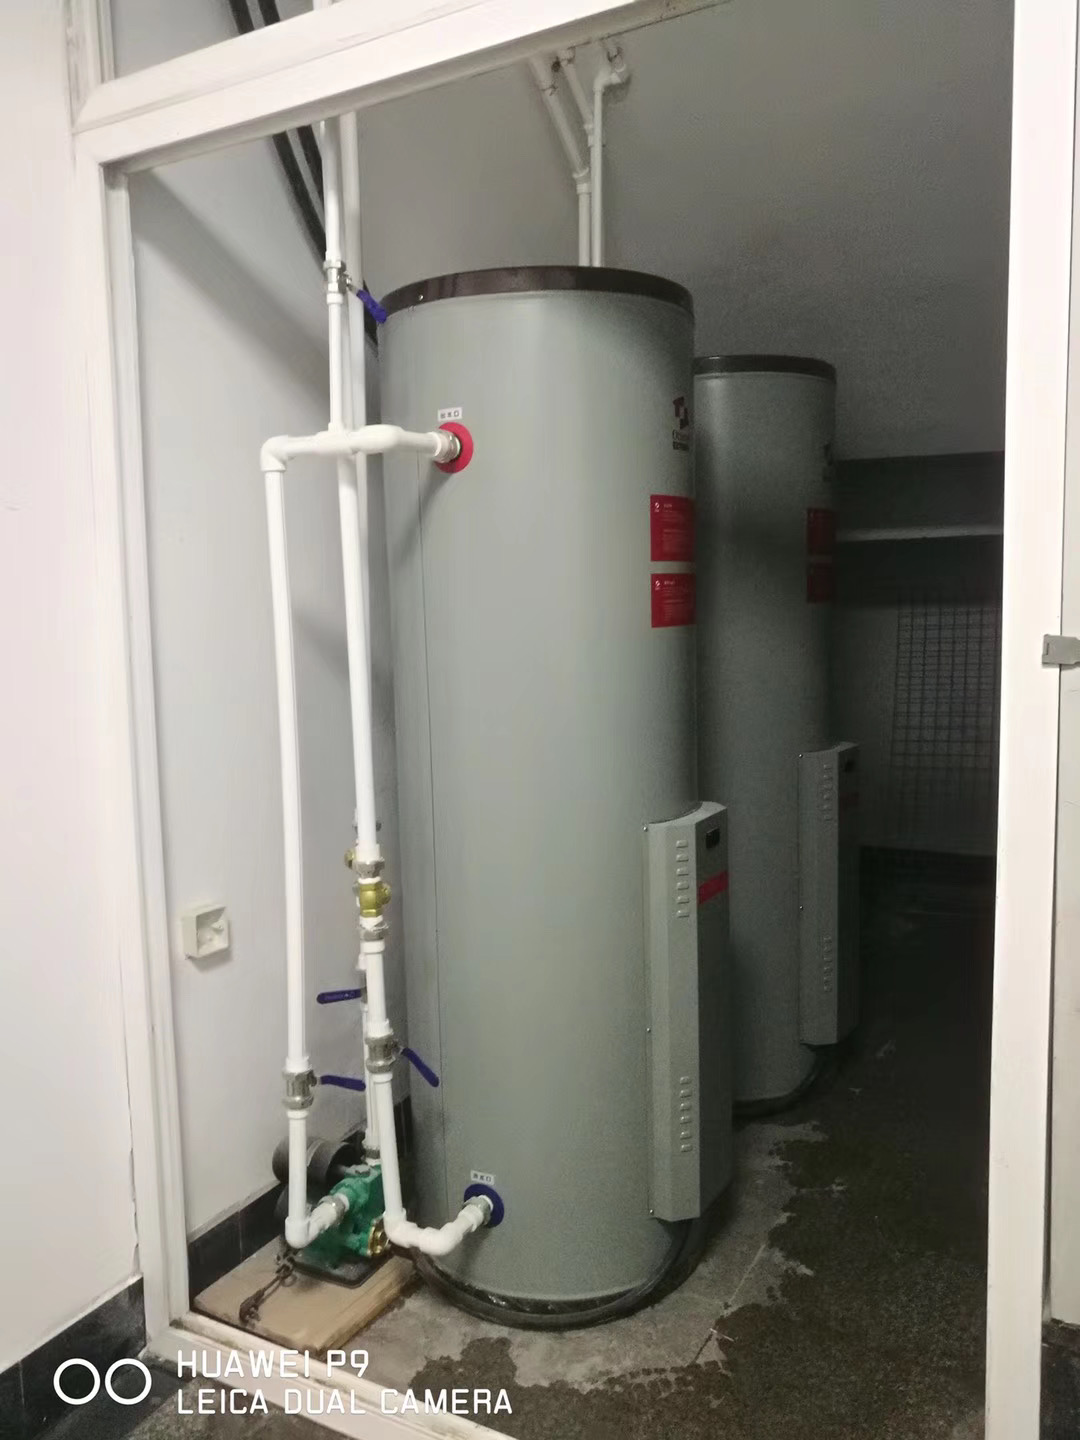 天津欧特商用容积式热水器图片 来电咨询 欧特梅尔新能源供应